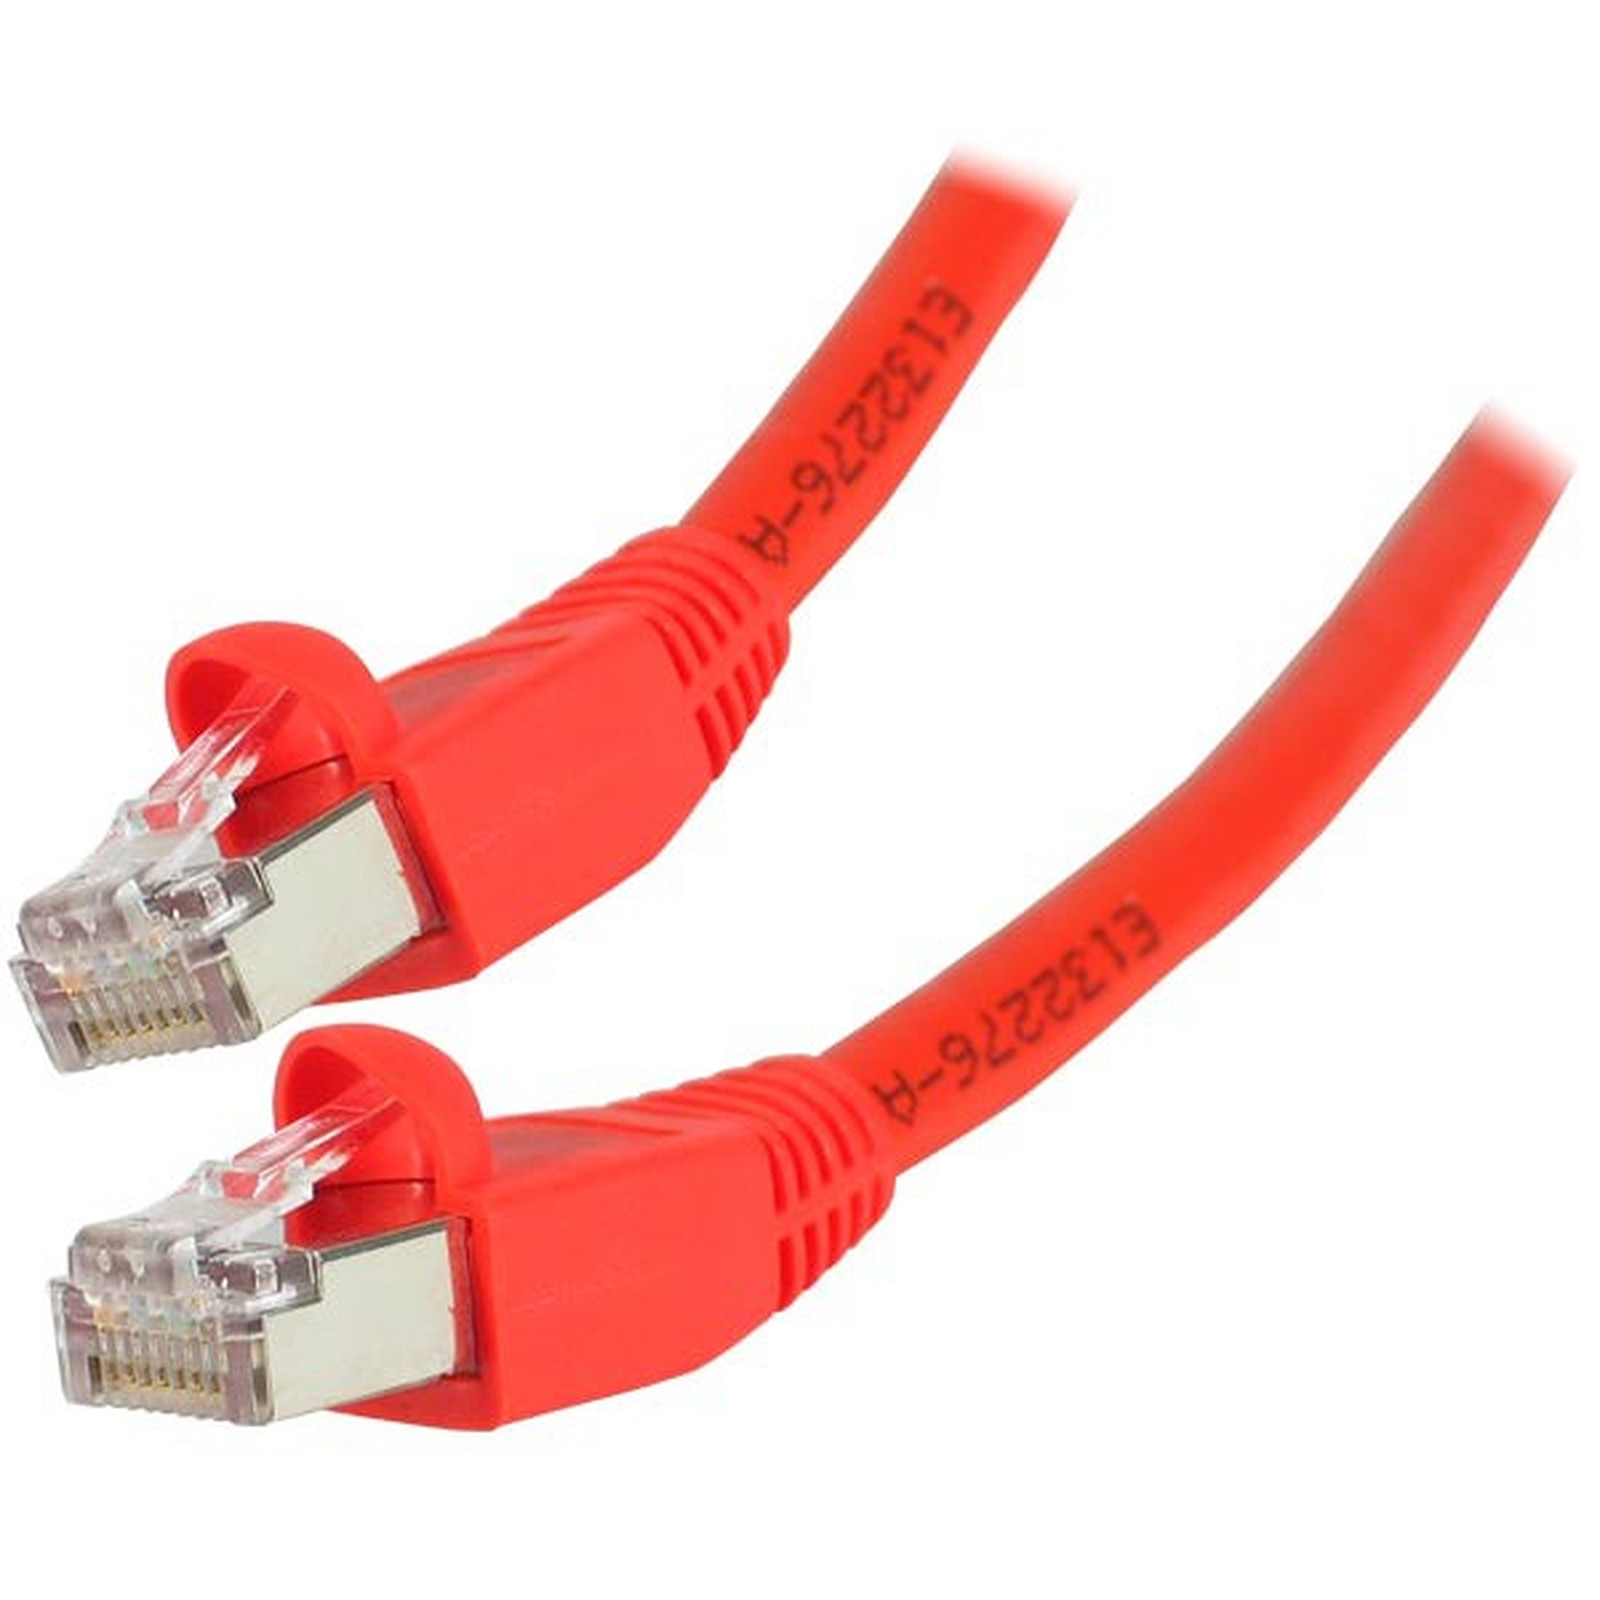 Cable RJ45 categorie 6 S/FTP 2 m (Rouge) - Cable RJ45 Generique